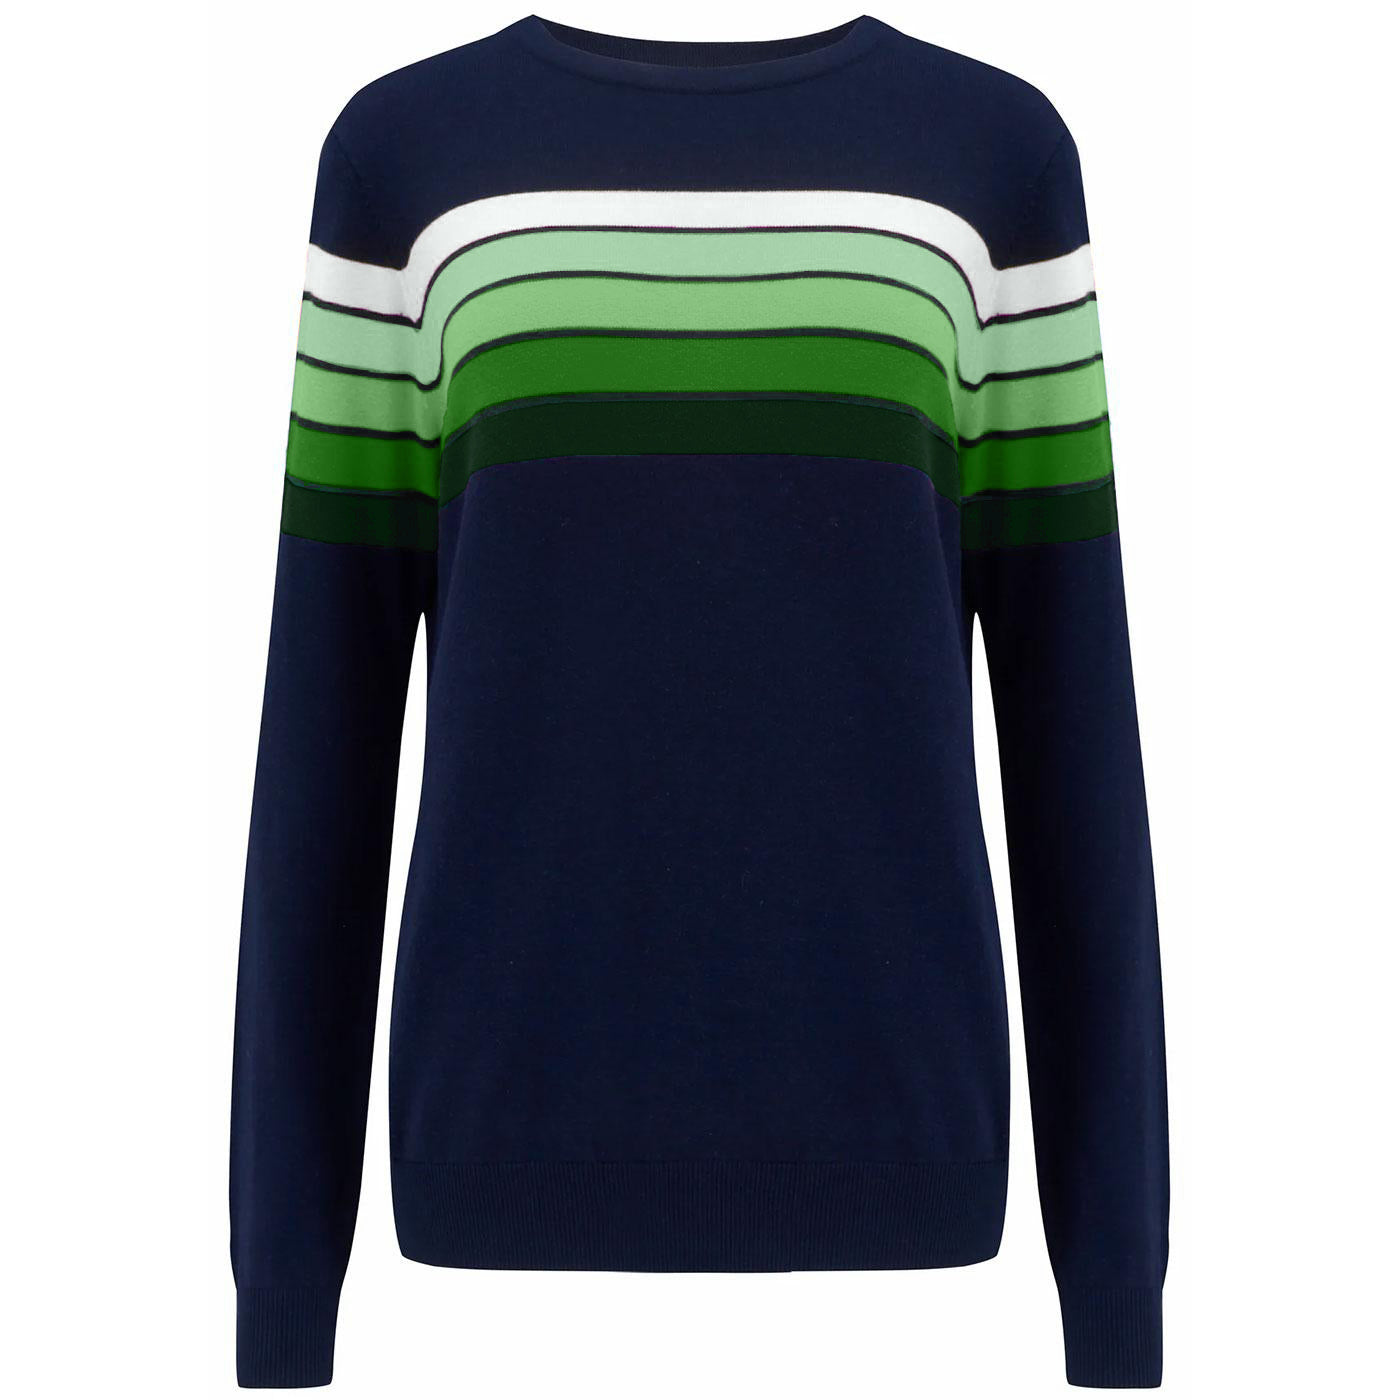 Women 1960s Retro Green Stripe Knit T-Shirts Knitwear Dark Blue